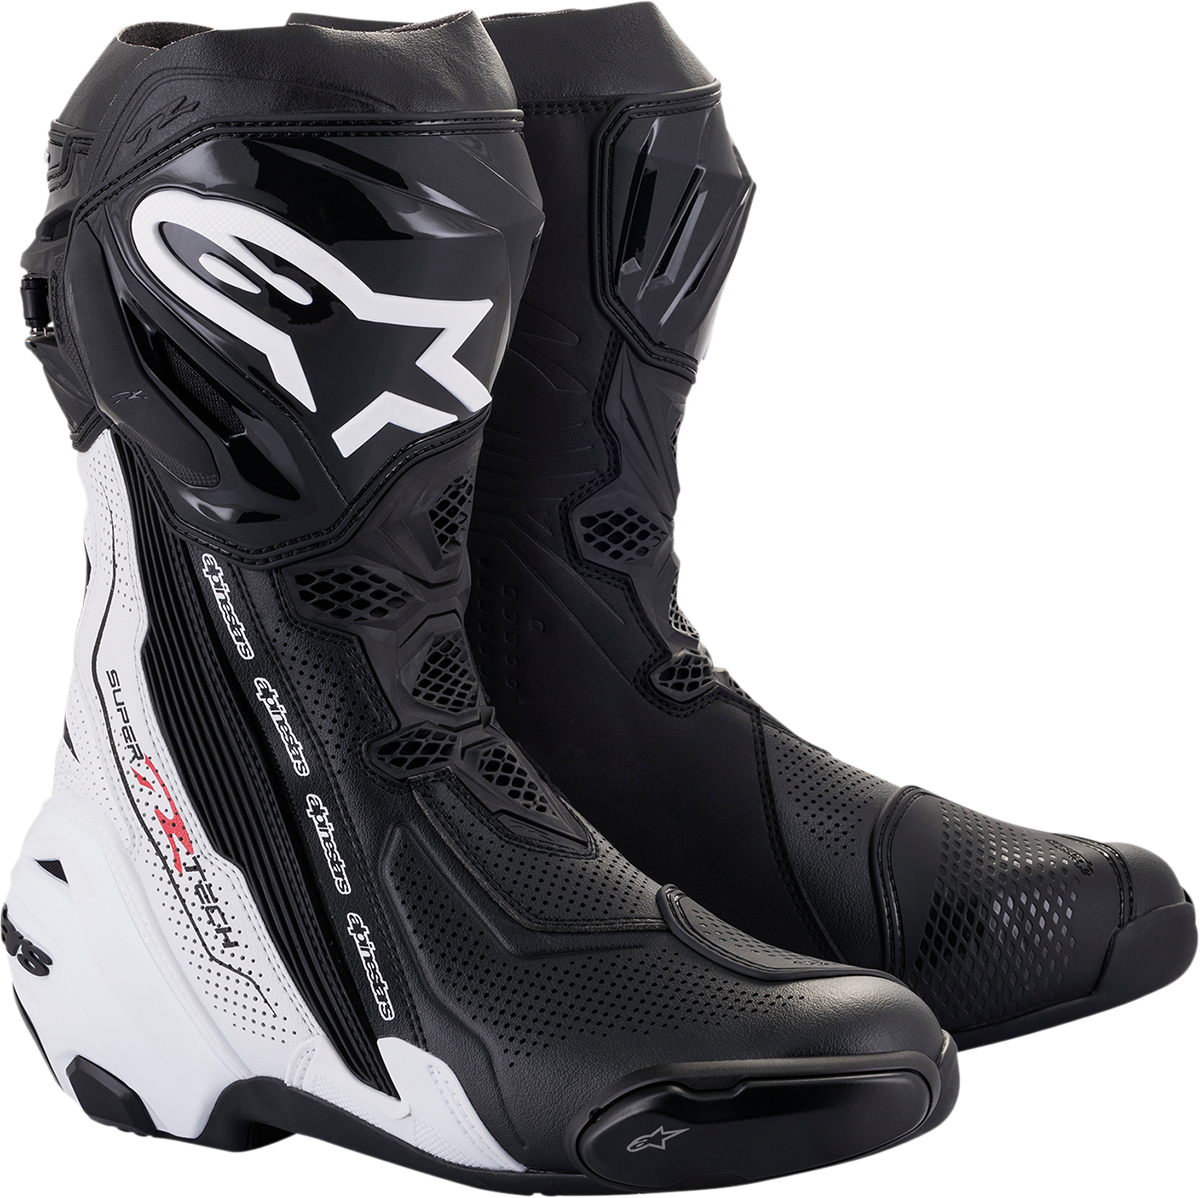 ALPINESTARS Supertech V Boots - Black/White - US 7.5 / EU 41 2220121-12-41